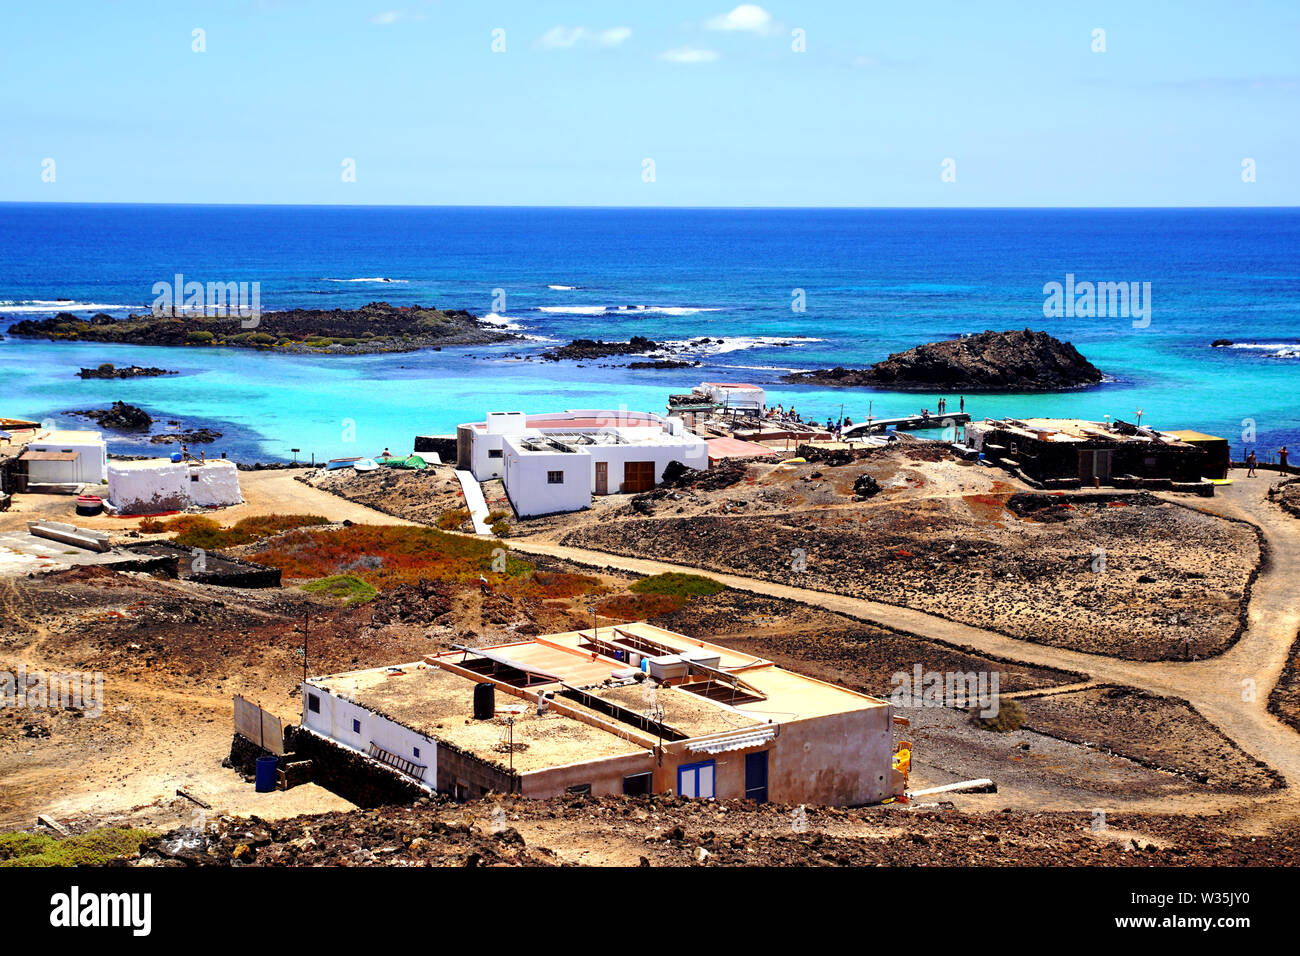 Le village de pêcheurs de El Puertito sur Isla de Lobos à Fuerteventura, Espagne Banque D'Images